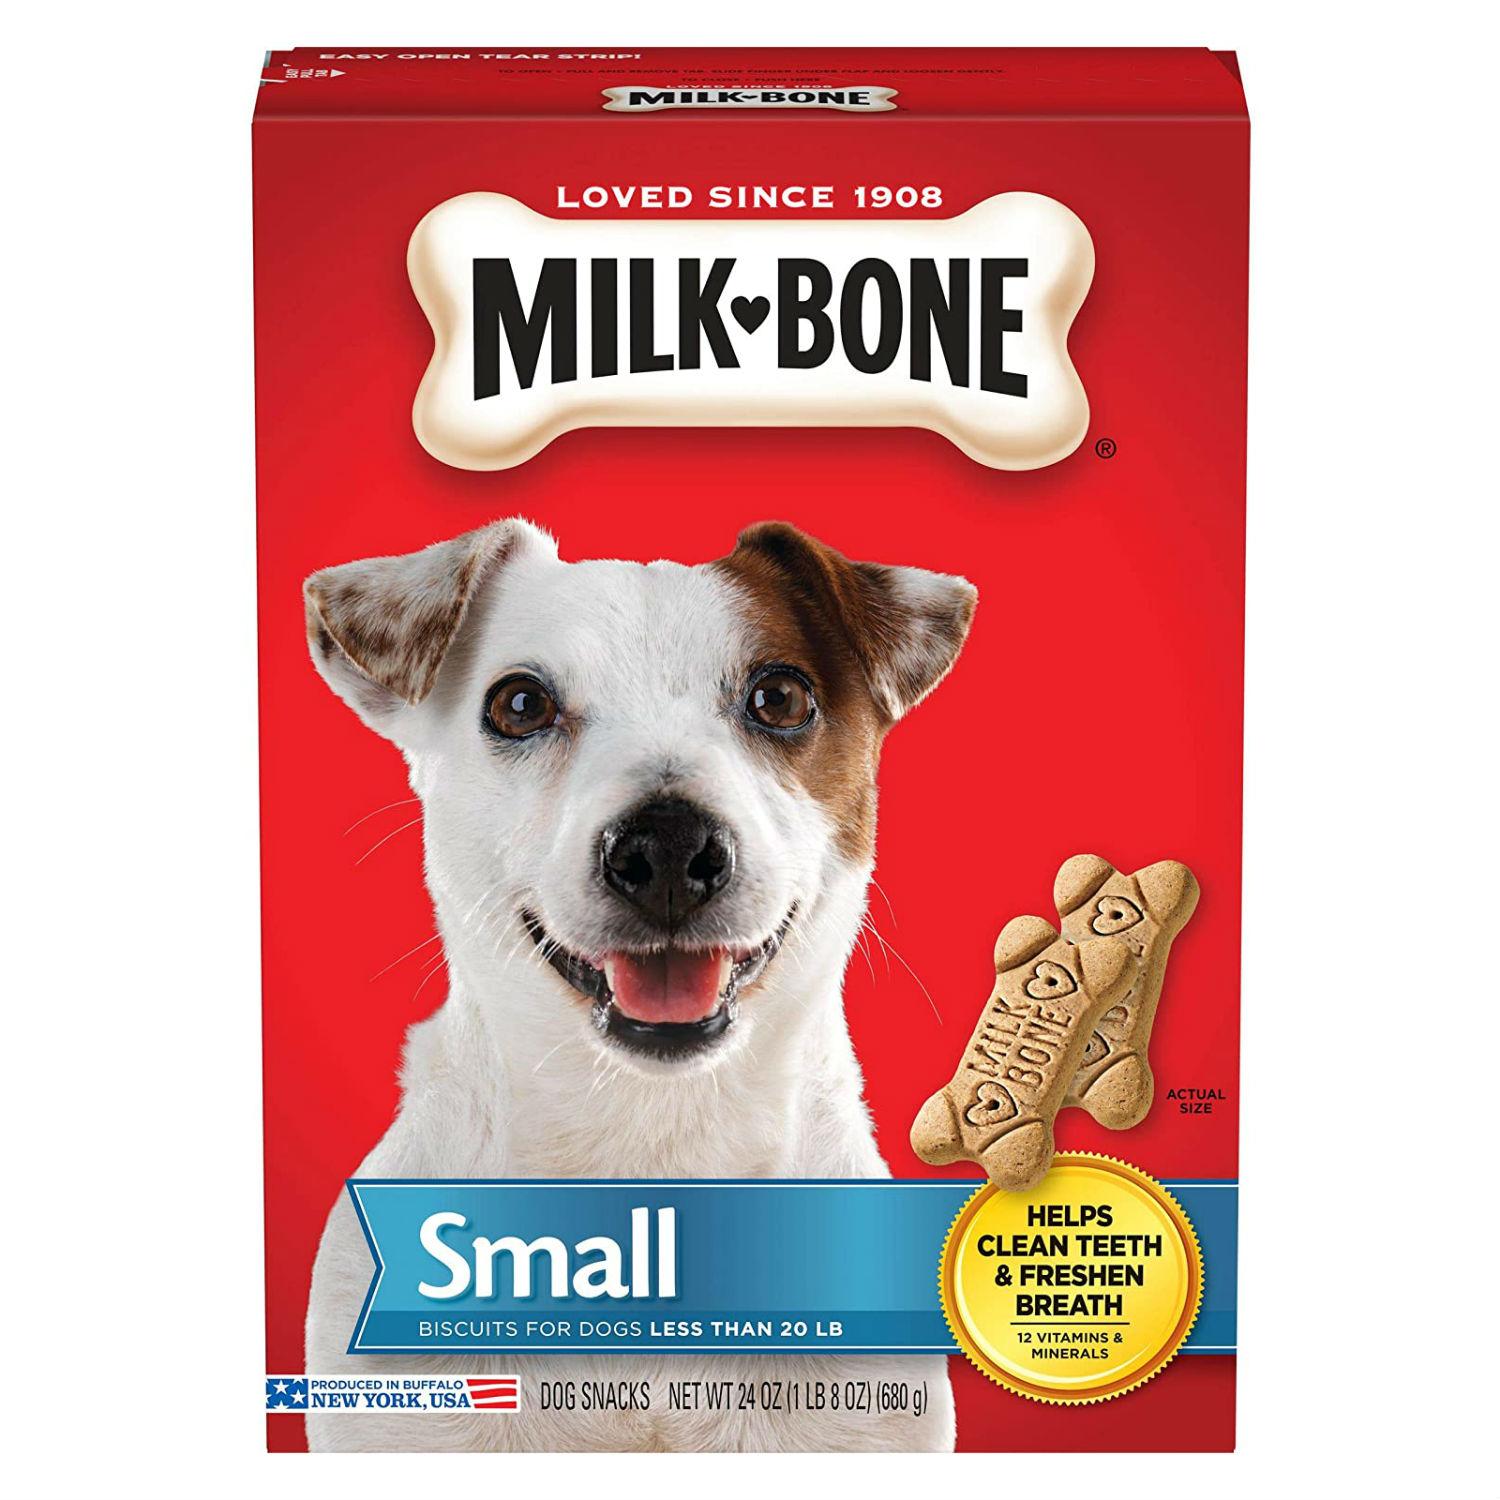 Смолл бисквит. Milk Bone. Алл догс. Biscuit for Dogs.